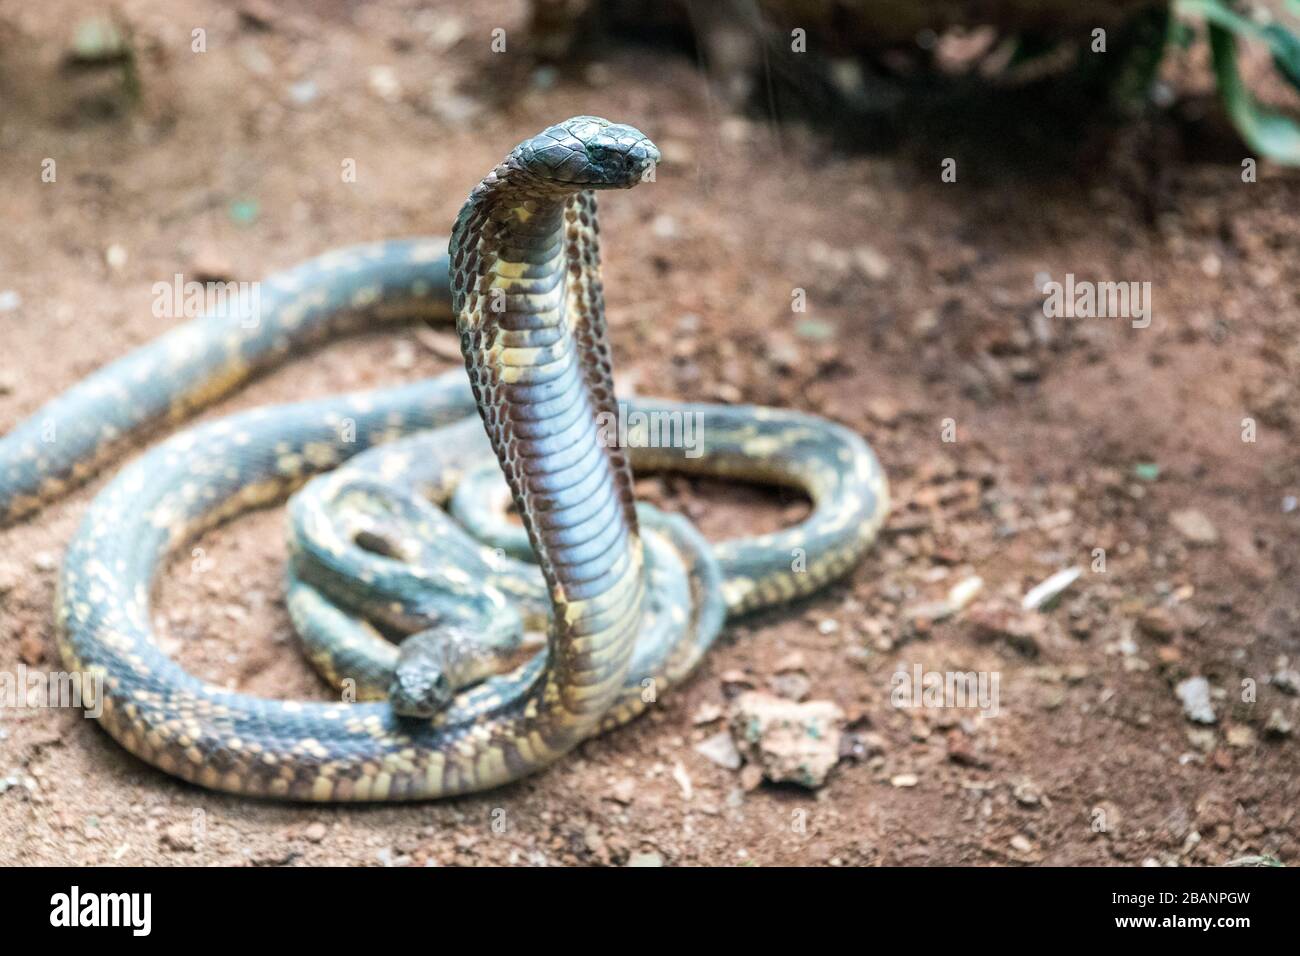 Egyptian cobra (Naja haje) at Uganda Reptiles Village, Entebbe, Uganda Stock Photo